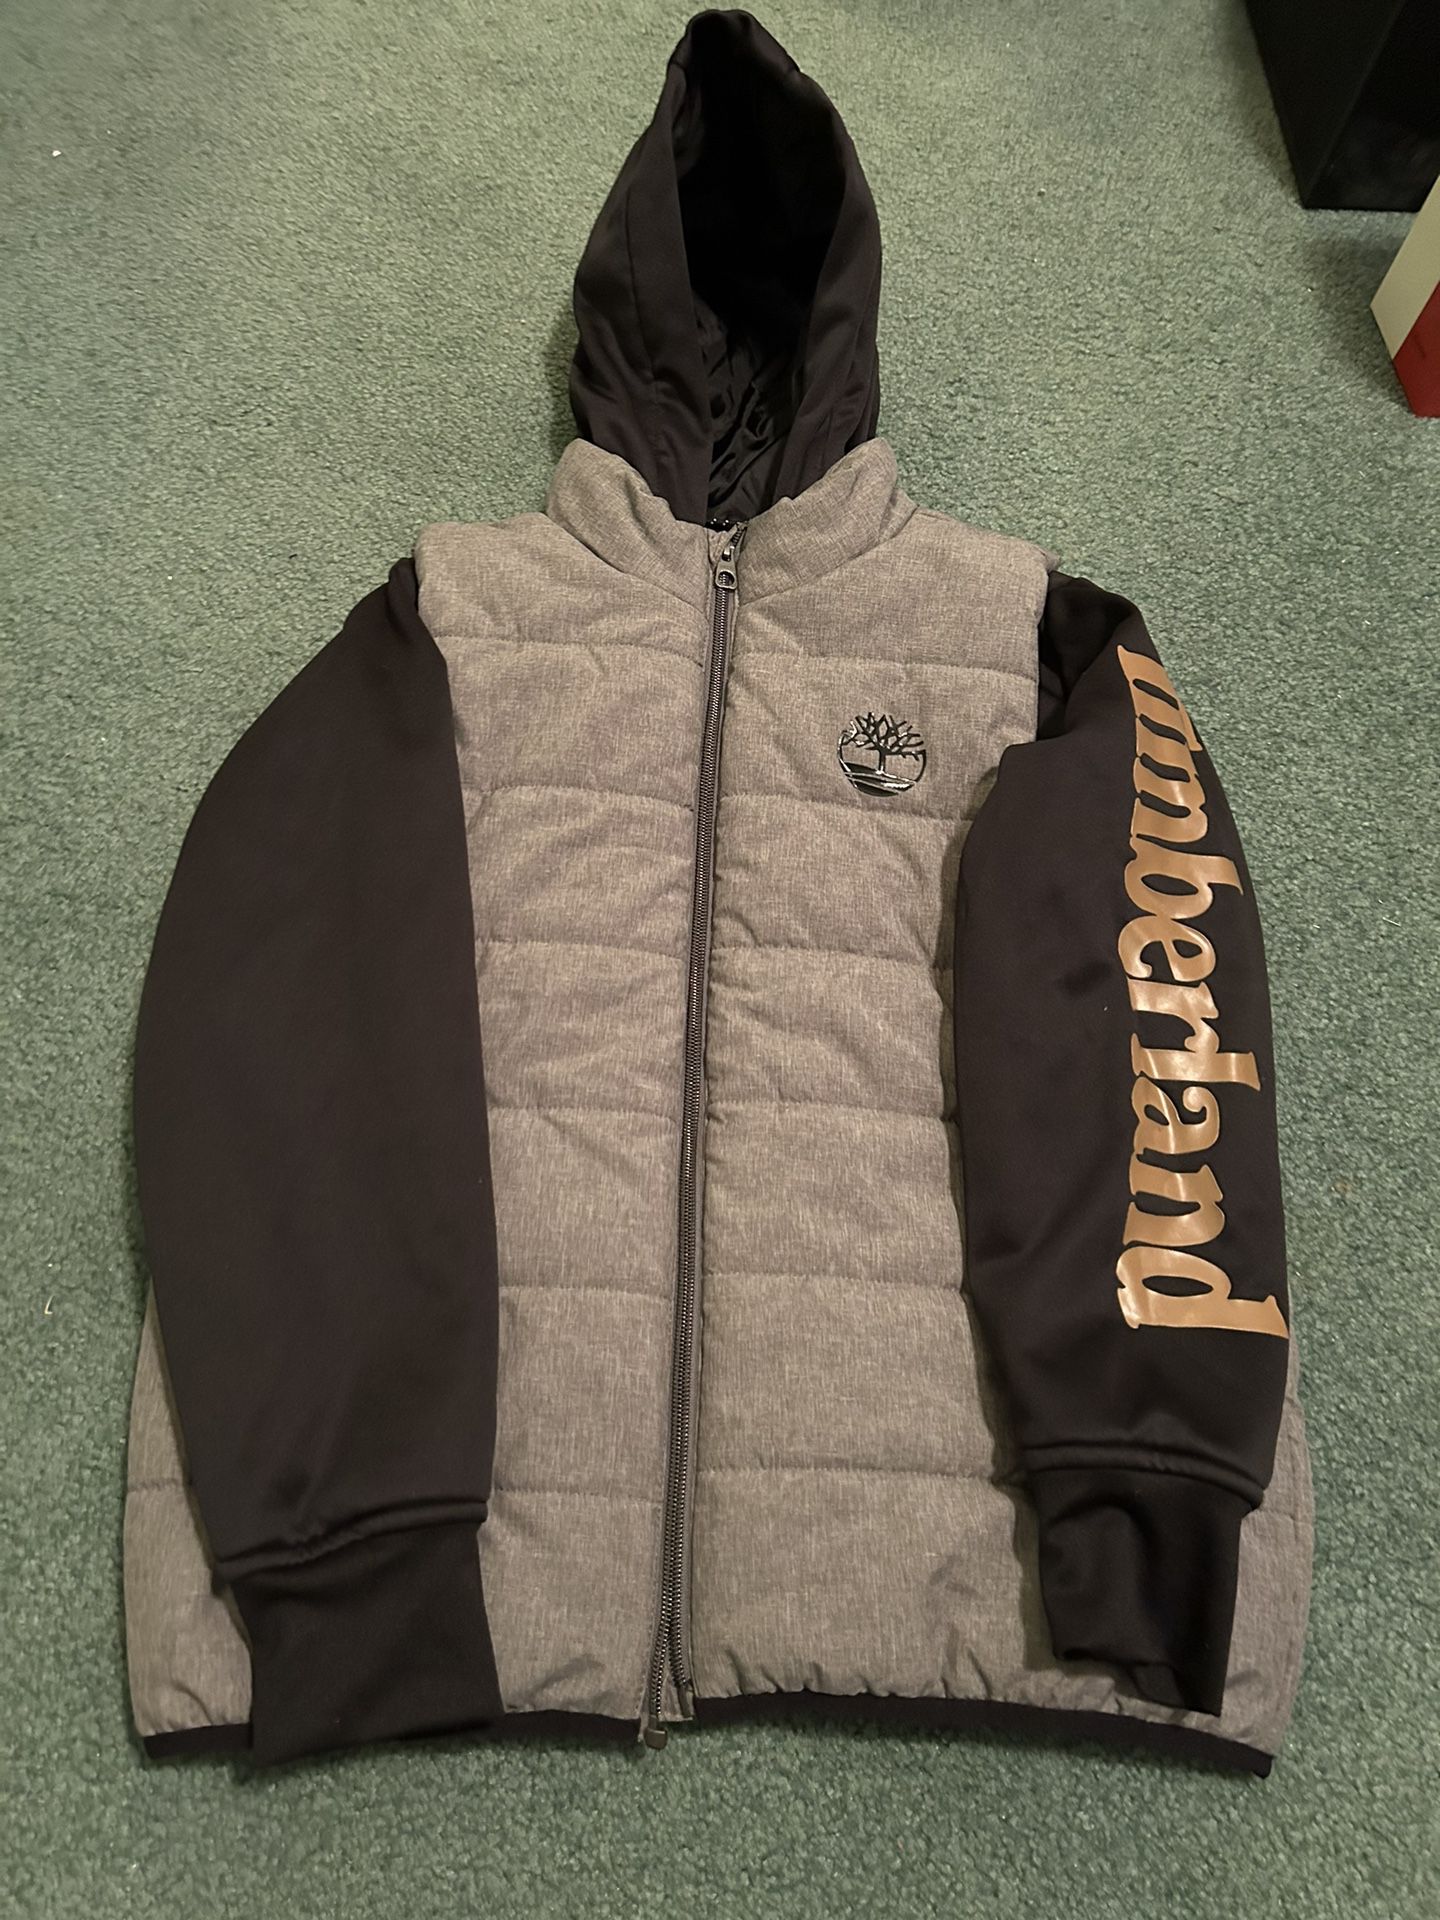 Like NEW Boys Timberland Jacket Coat Size Medium 10-12